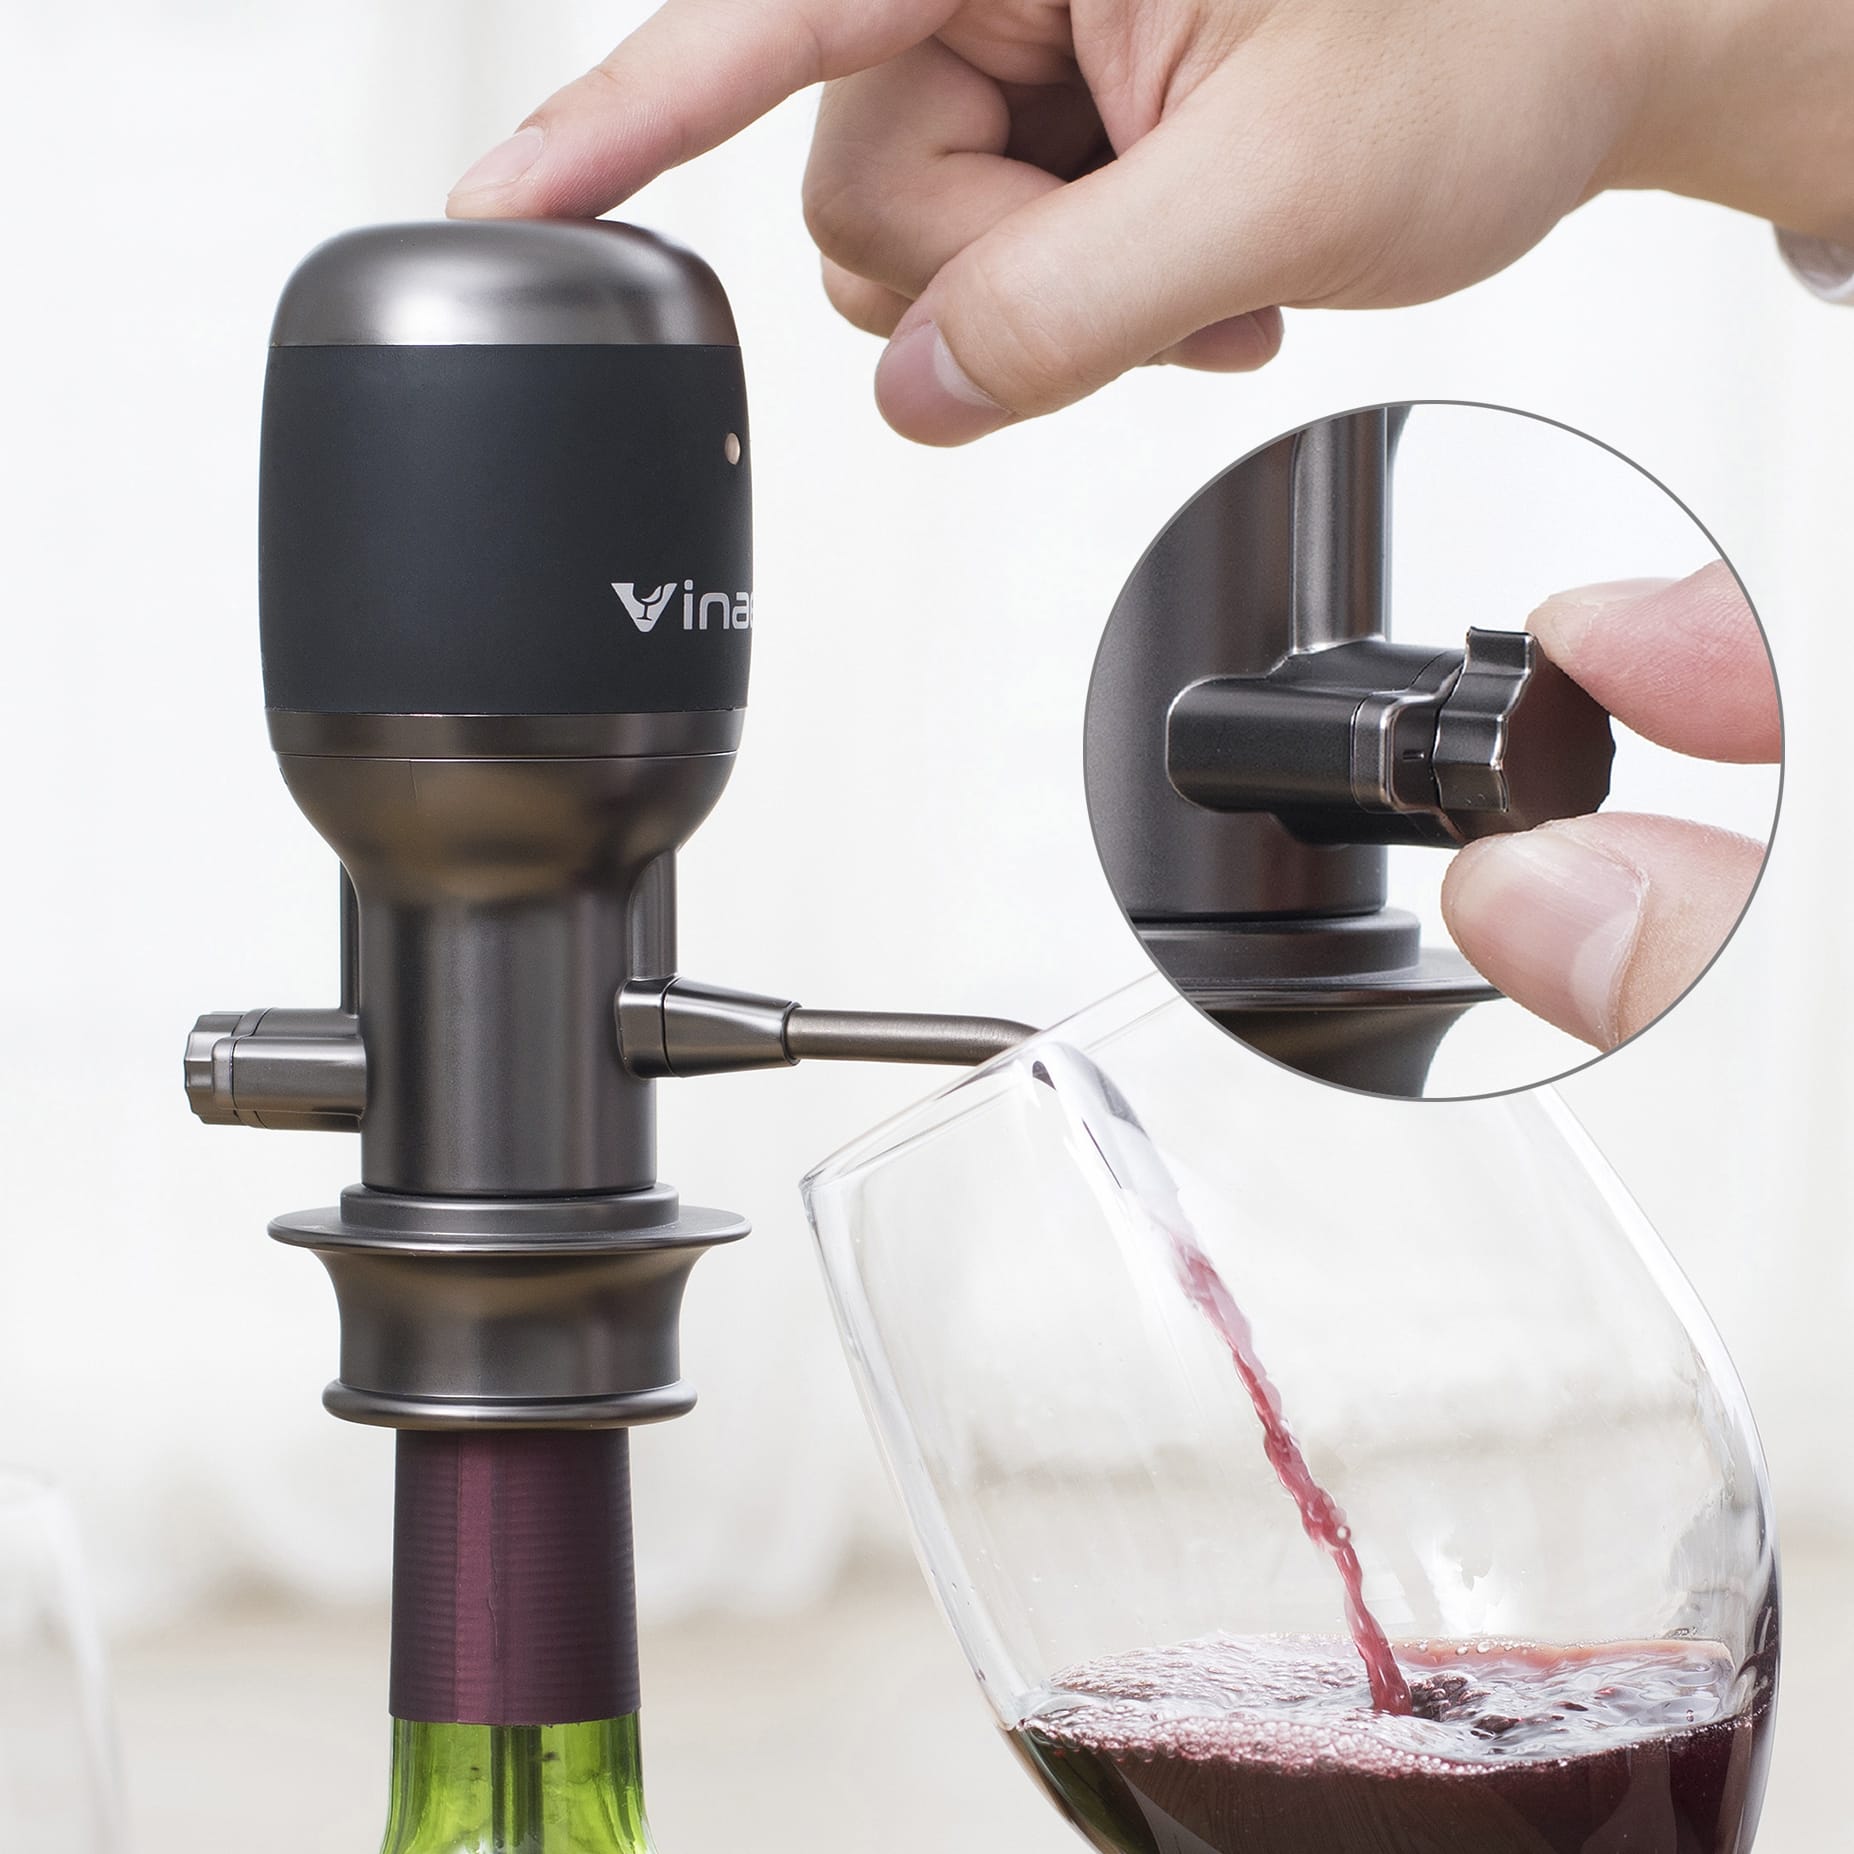 Купить аэраторы электрические. Mv7 аэратор для вина. Vinaera Pro Adjustable Electric Wine Aerator. Аэратор для вина Wine Aerator. Vinaera Pro mv7 аэратор для вина.